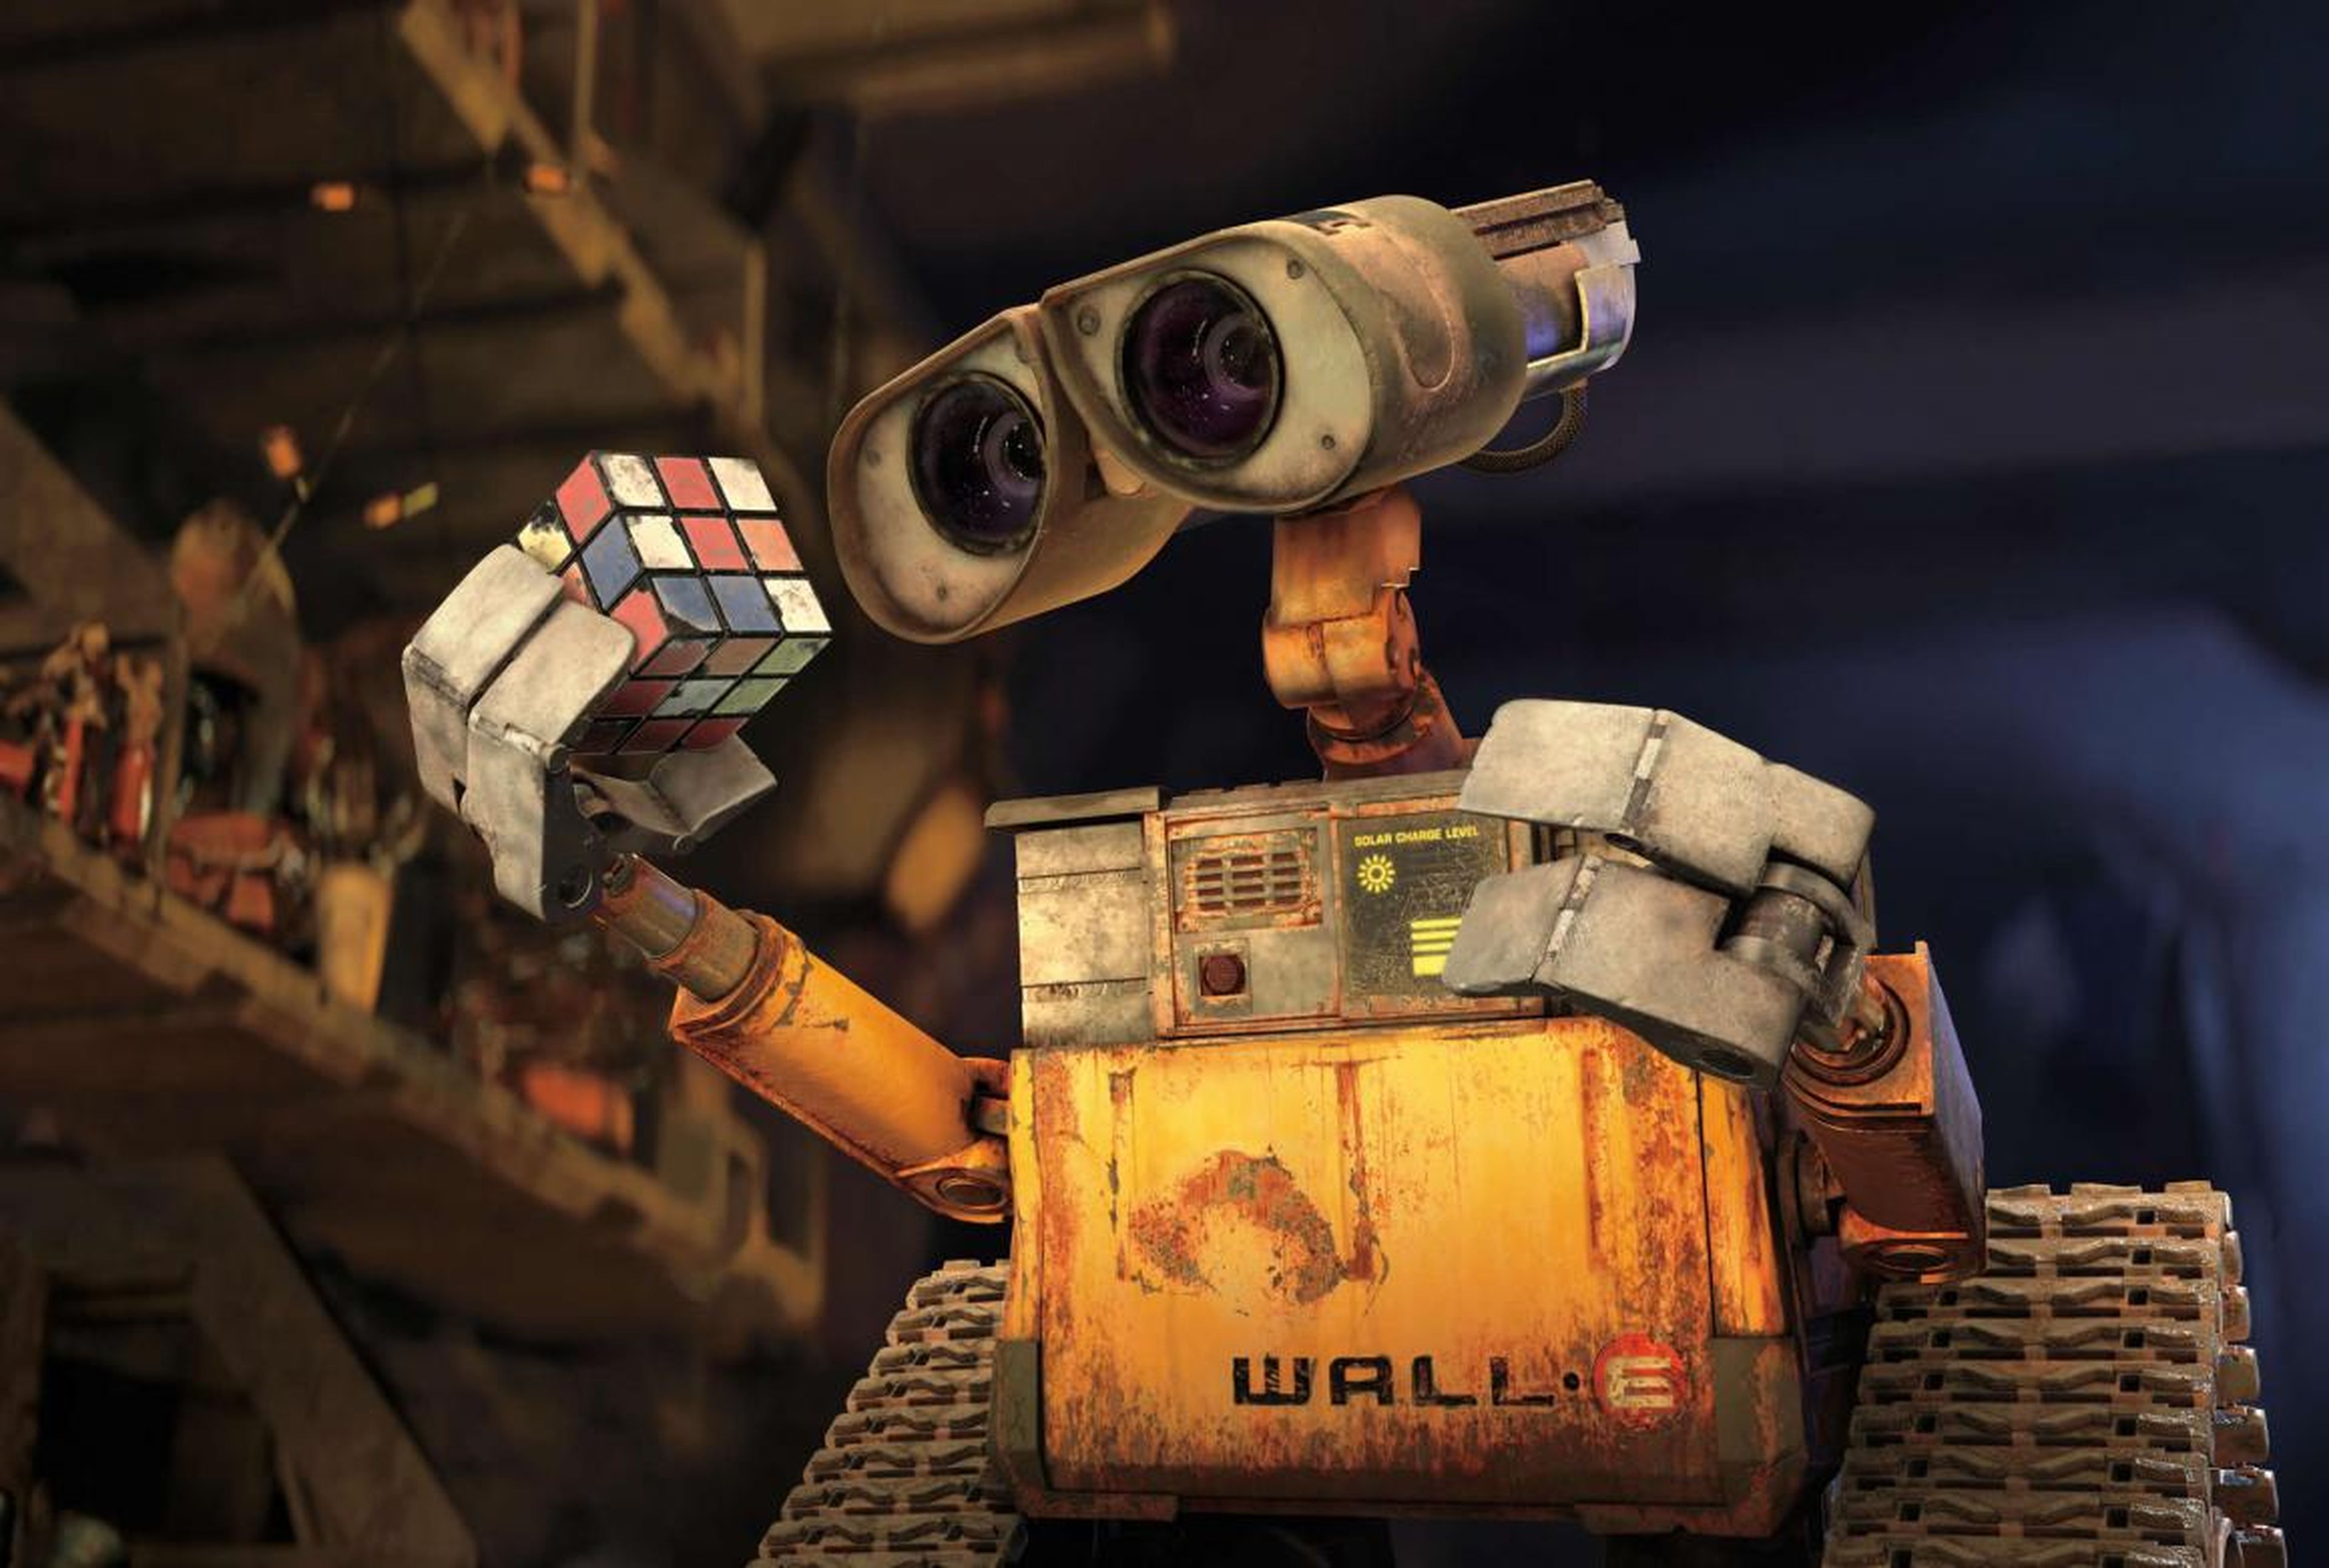 43. "WALL-E" (2008)